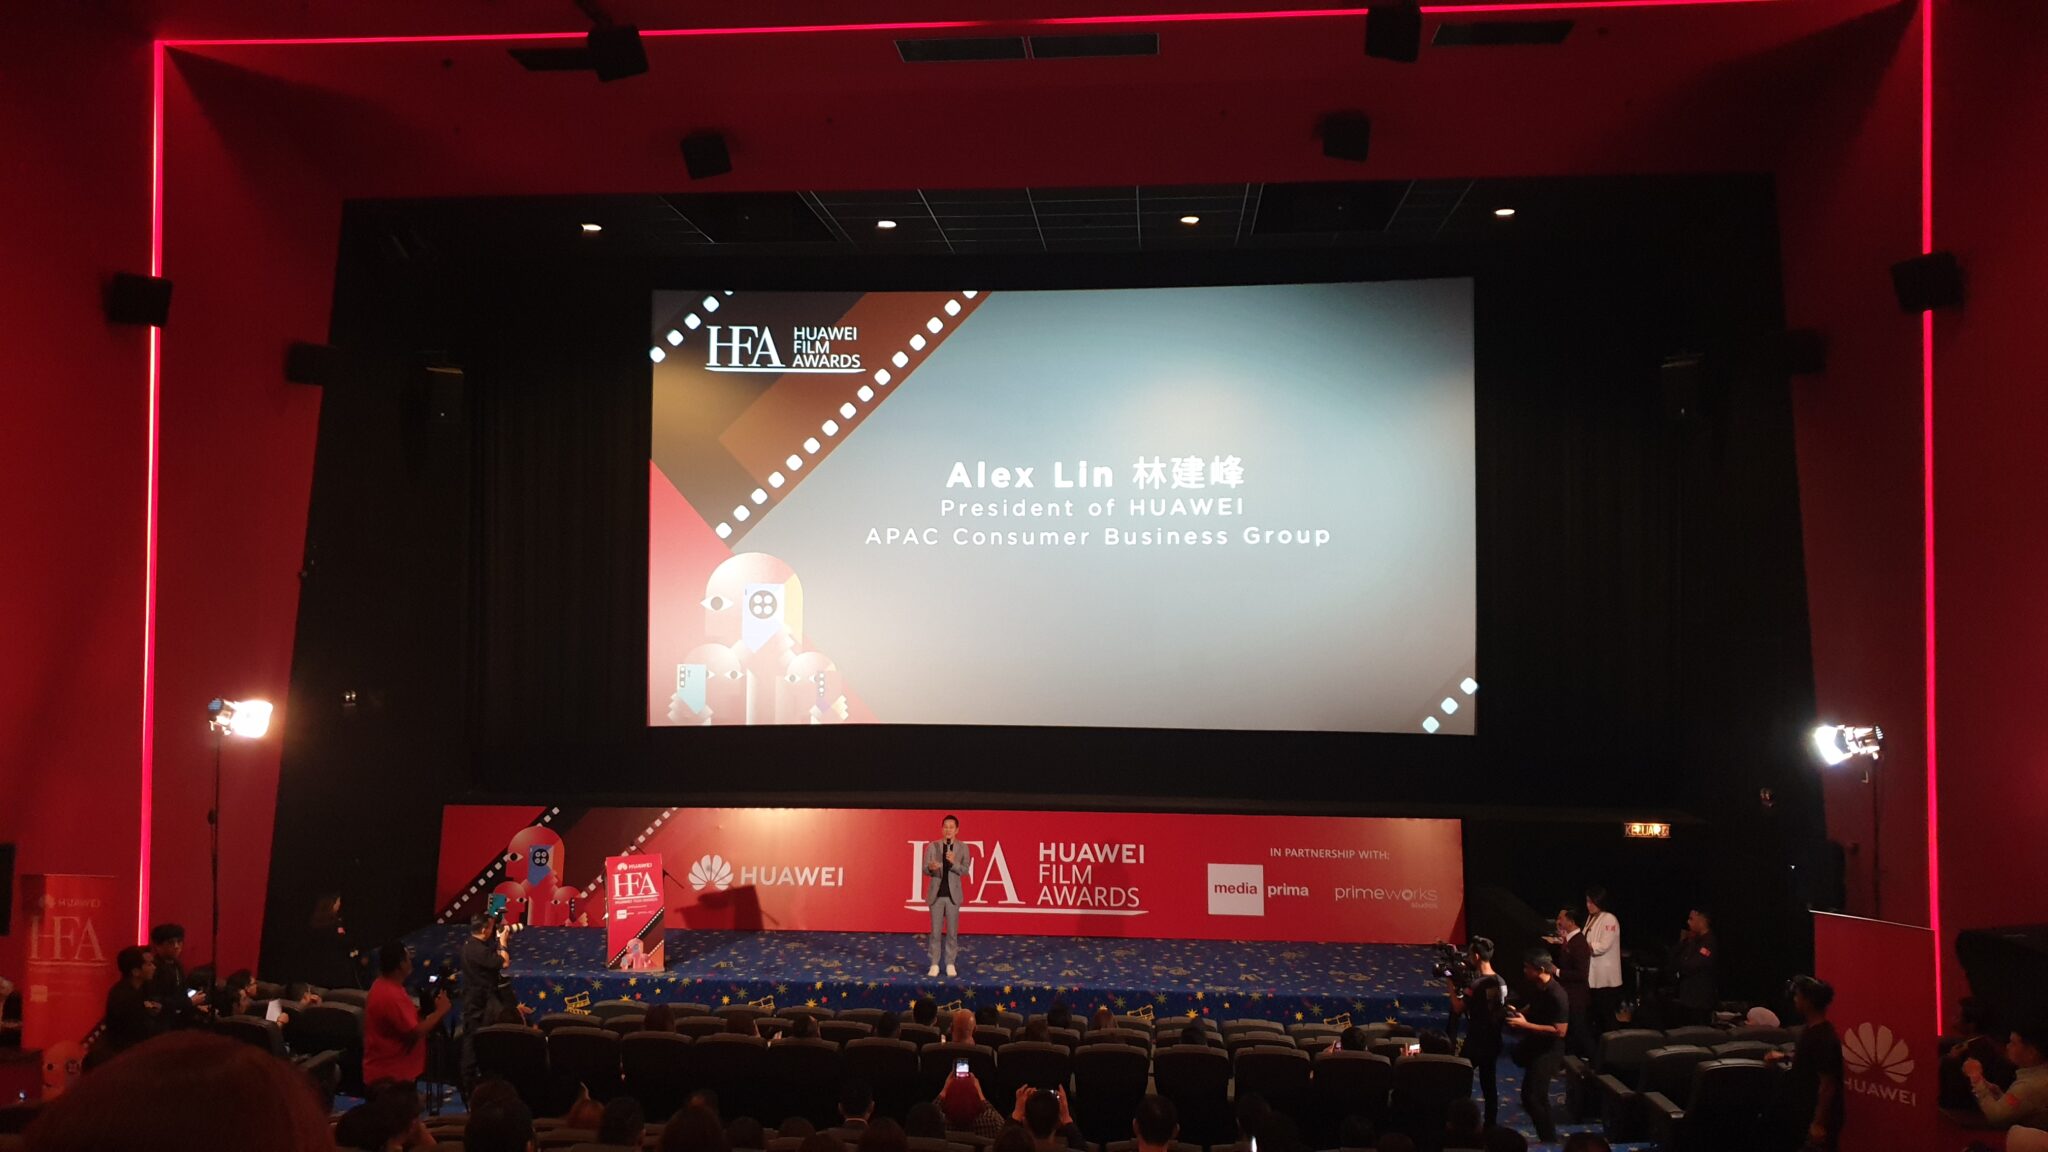 Huawei Film Awards start